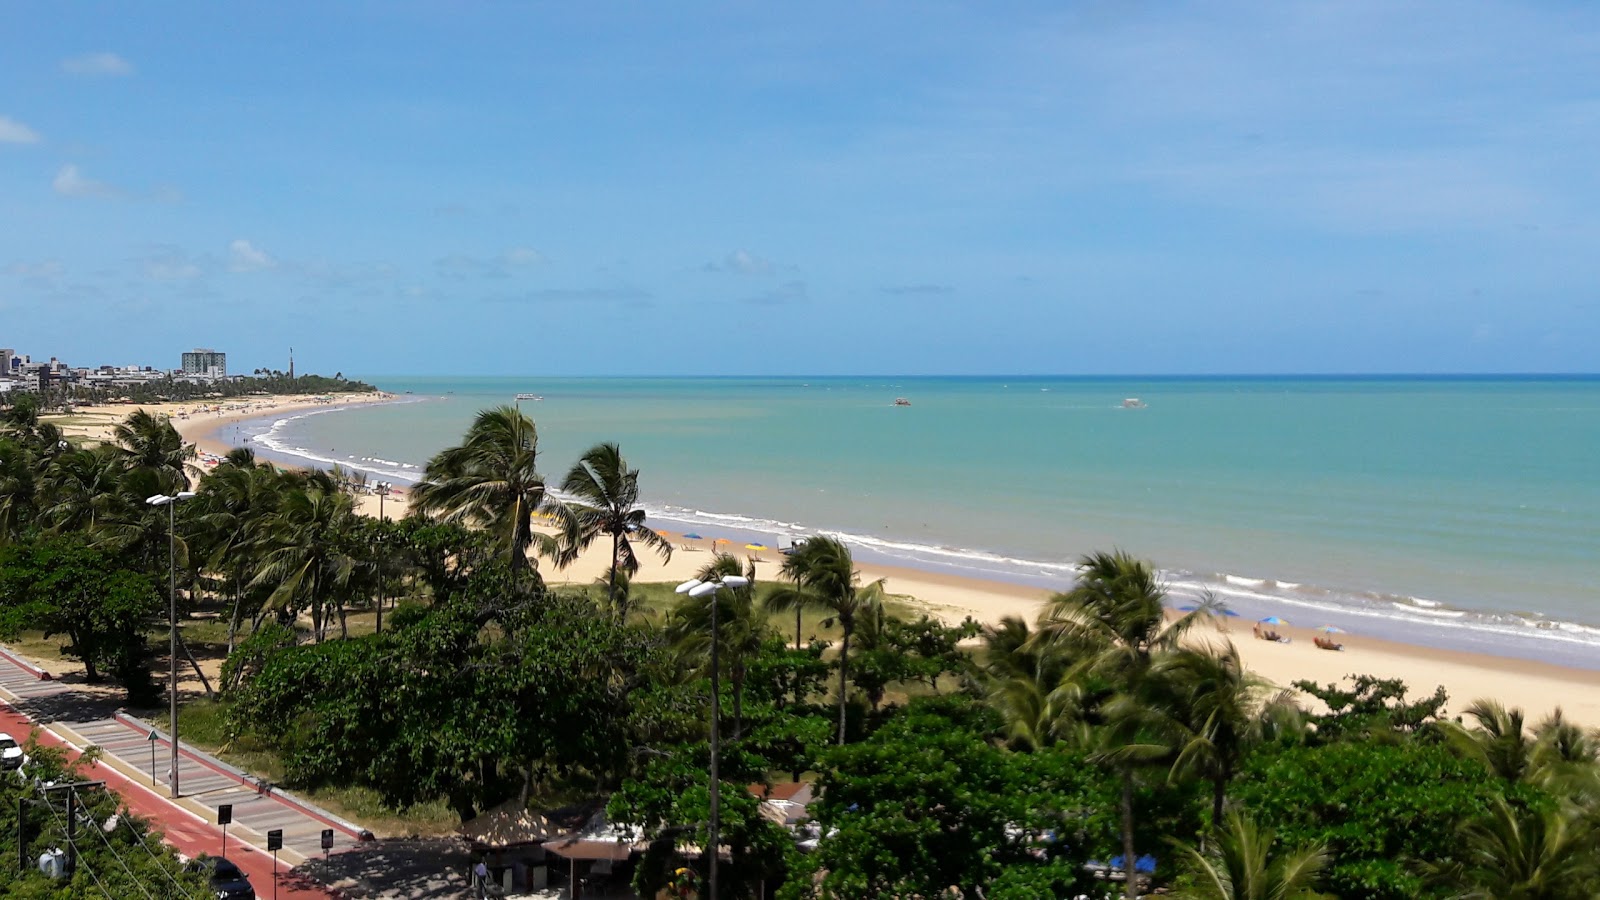 Foto de Praia de Cabo Branco - recomendado para viajeros en familia con niños